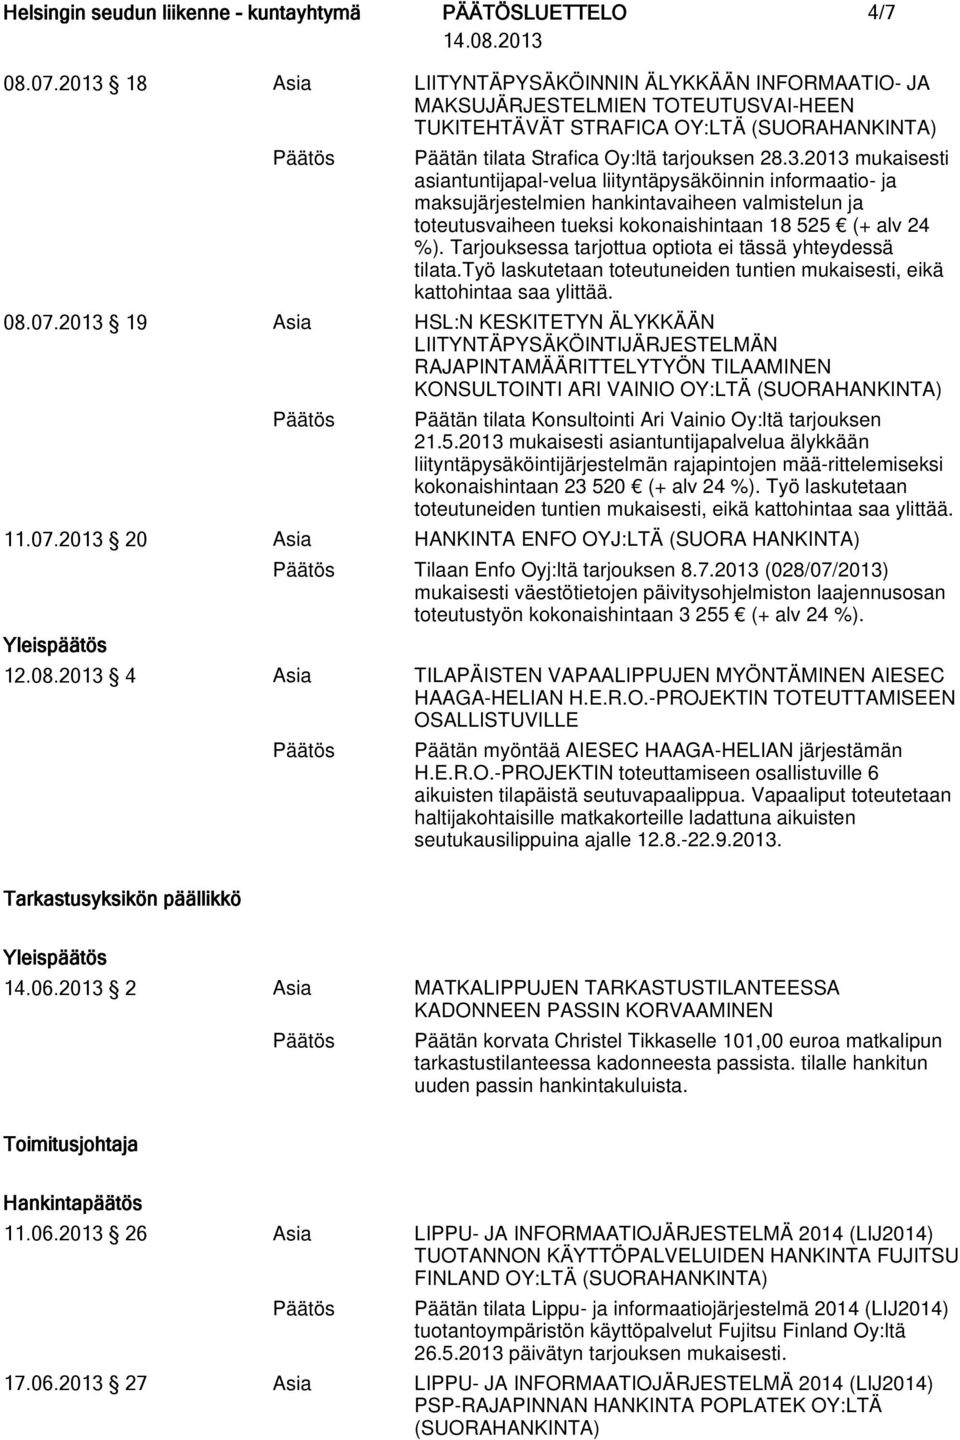 2013 19 Asia HSL:N KESKITETYN ÄLYKKÄÄN LIITYNTÄPYSÄKÖINTIJÄRJESTELMÄN RAJAPINTAMÄÄRITTELYTYÖN TILAAMINEN KONSULTOINTI ARI VAINIO OY:LTÄ Päätän tilata Konsultointi Ari Vainio Oy:ltä tarjouksen 21.5.